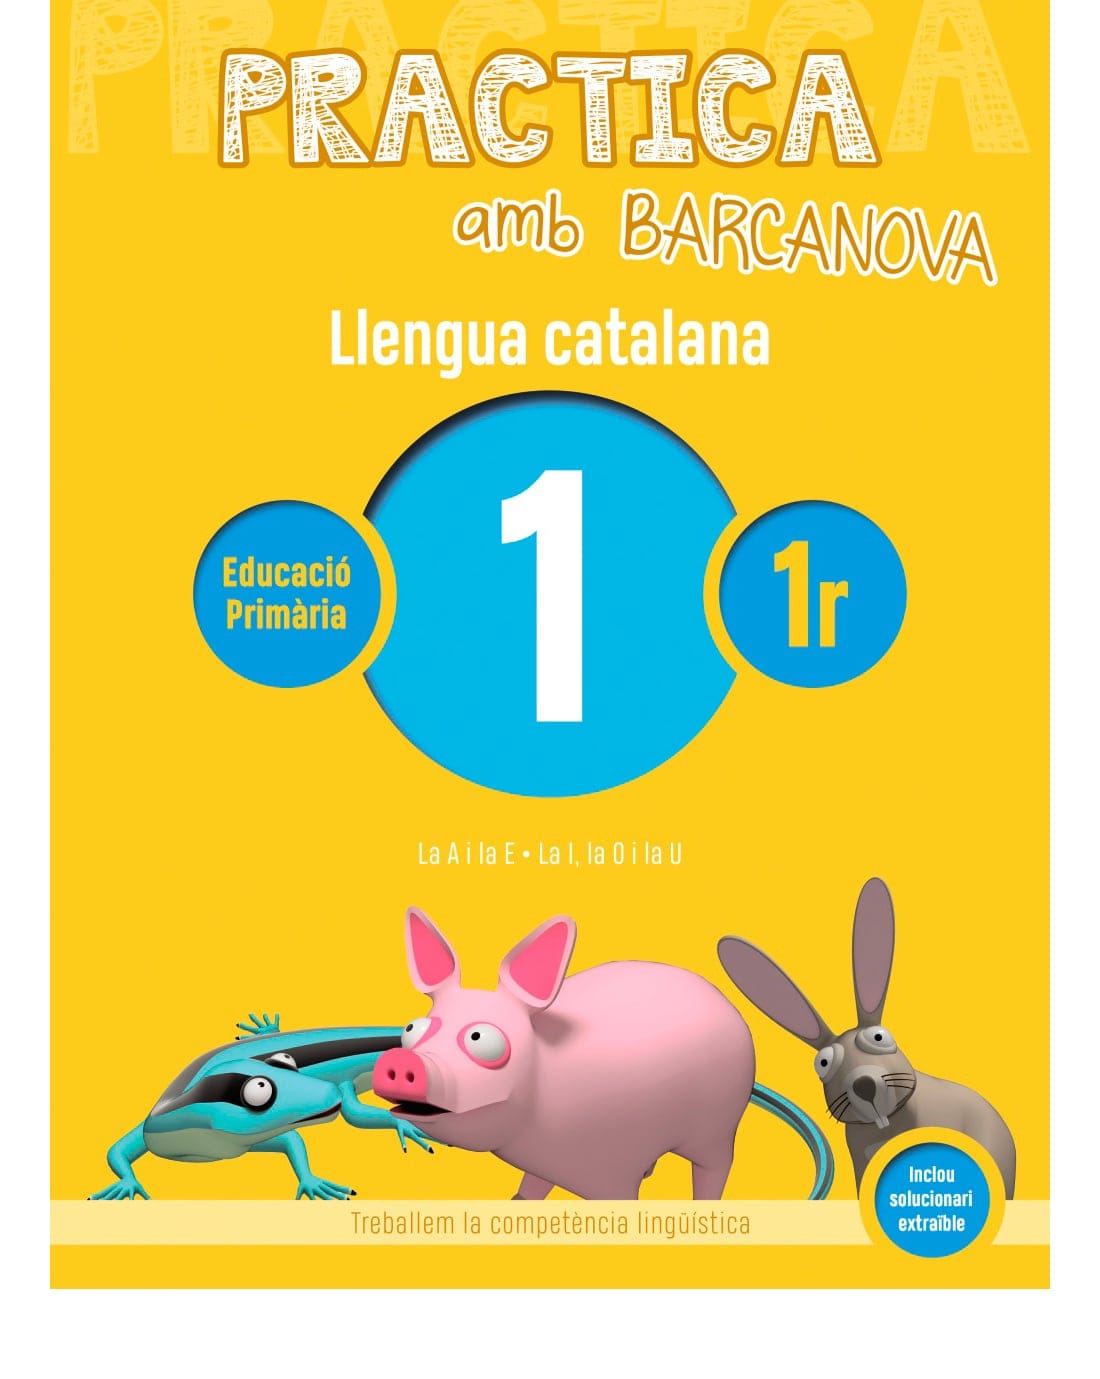 Practica amb Barcanova 1. Llengua catalana